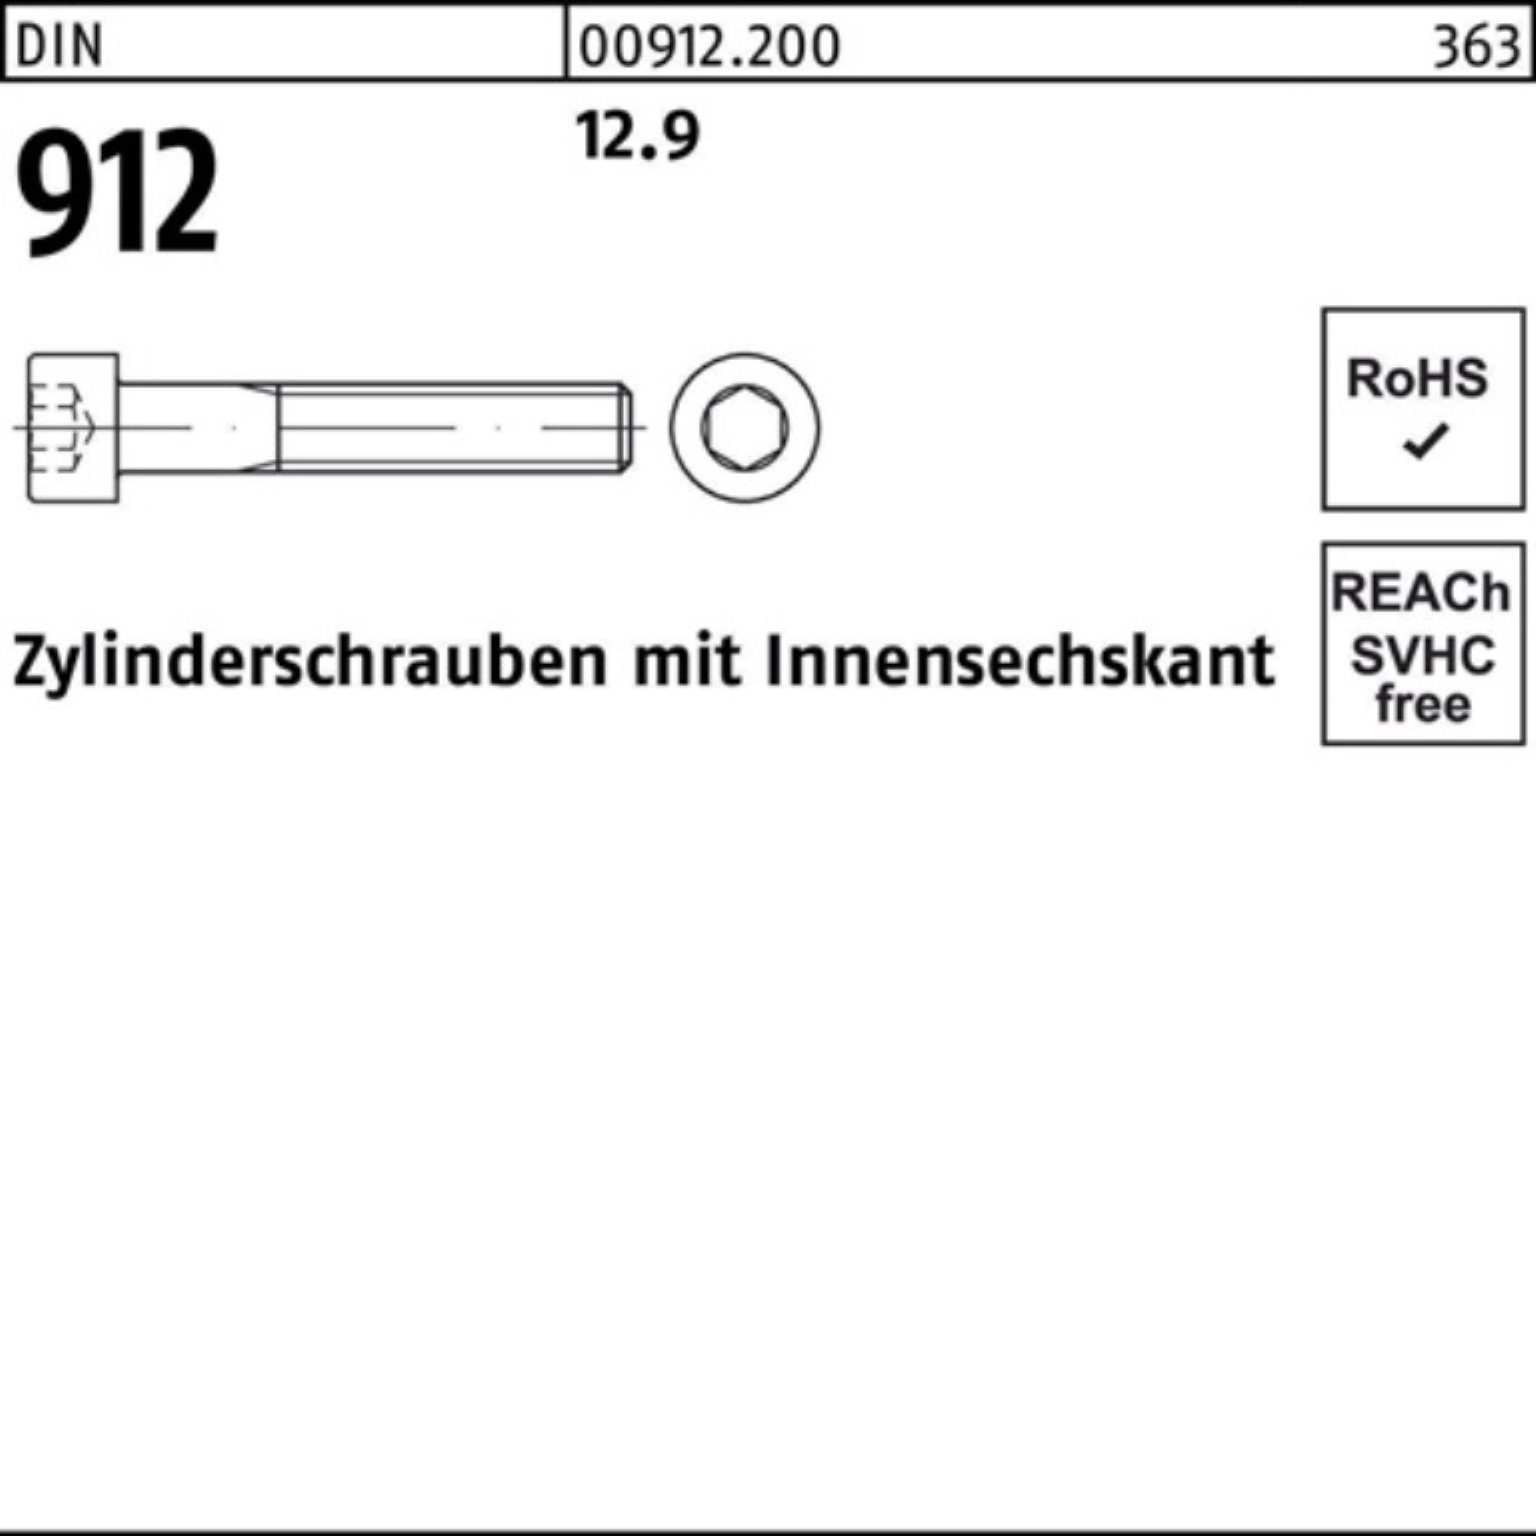 M33x Pack D 100er 12.9 Reyher Innen-6kt Zylinderschraube 912 DIN 1 240 Zylinderschraube Stück